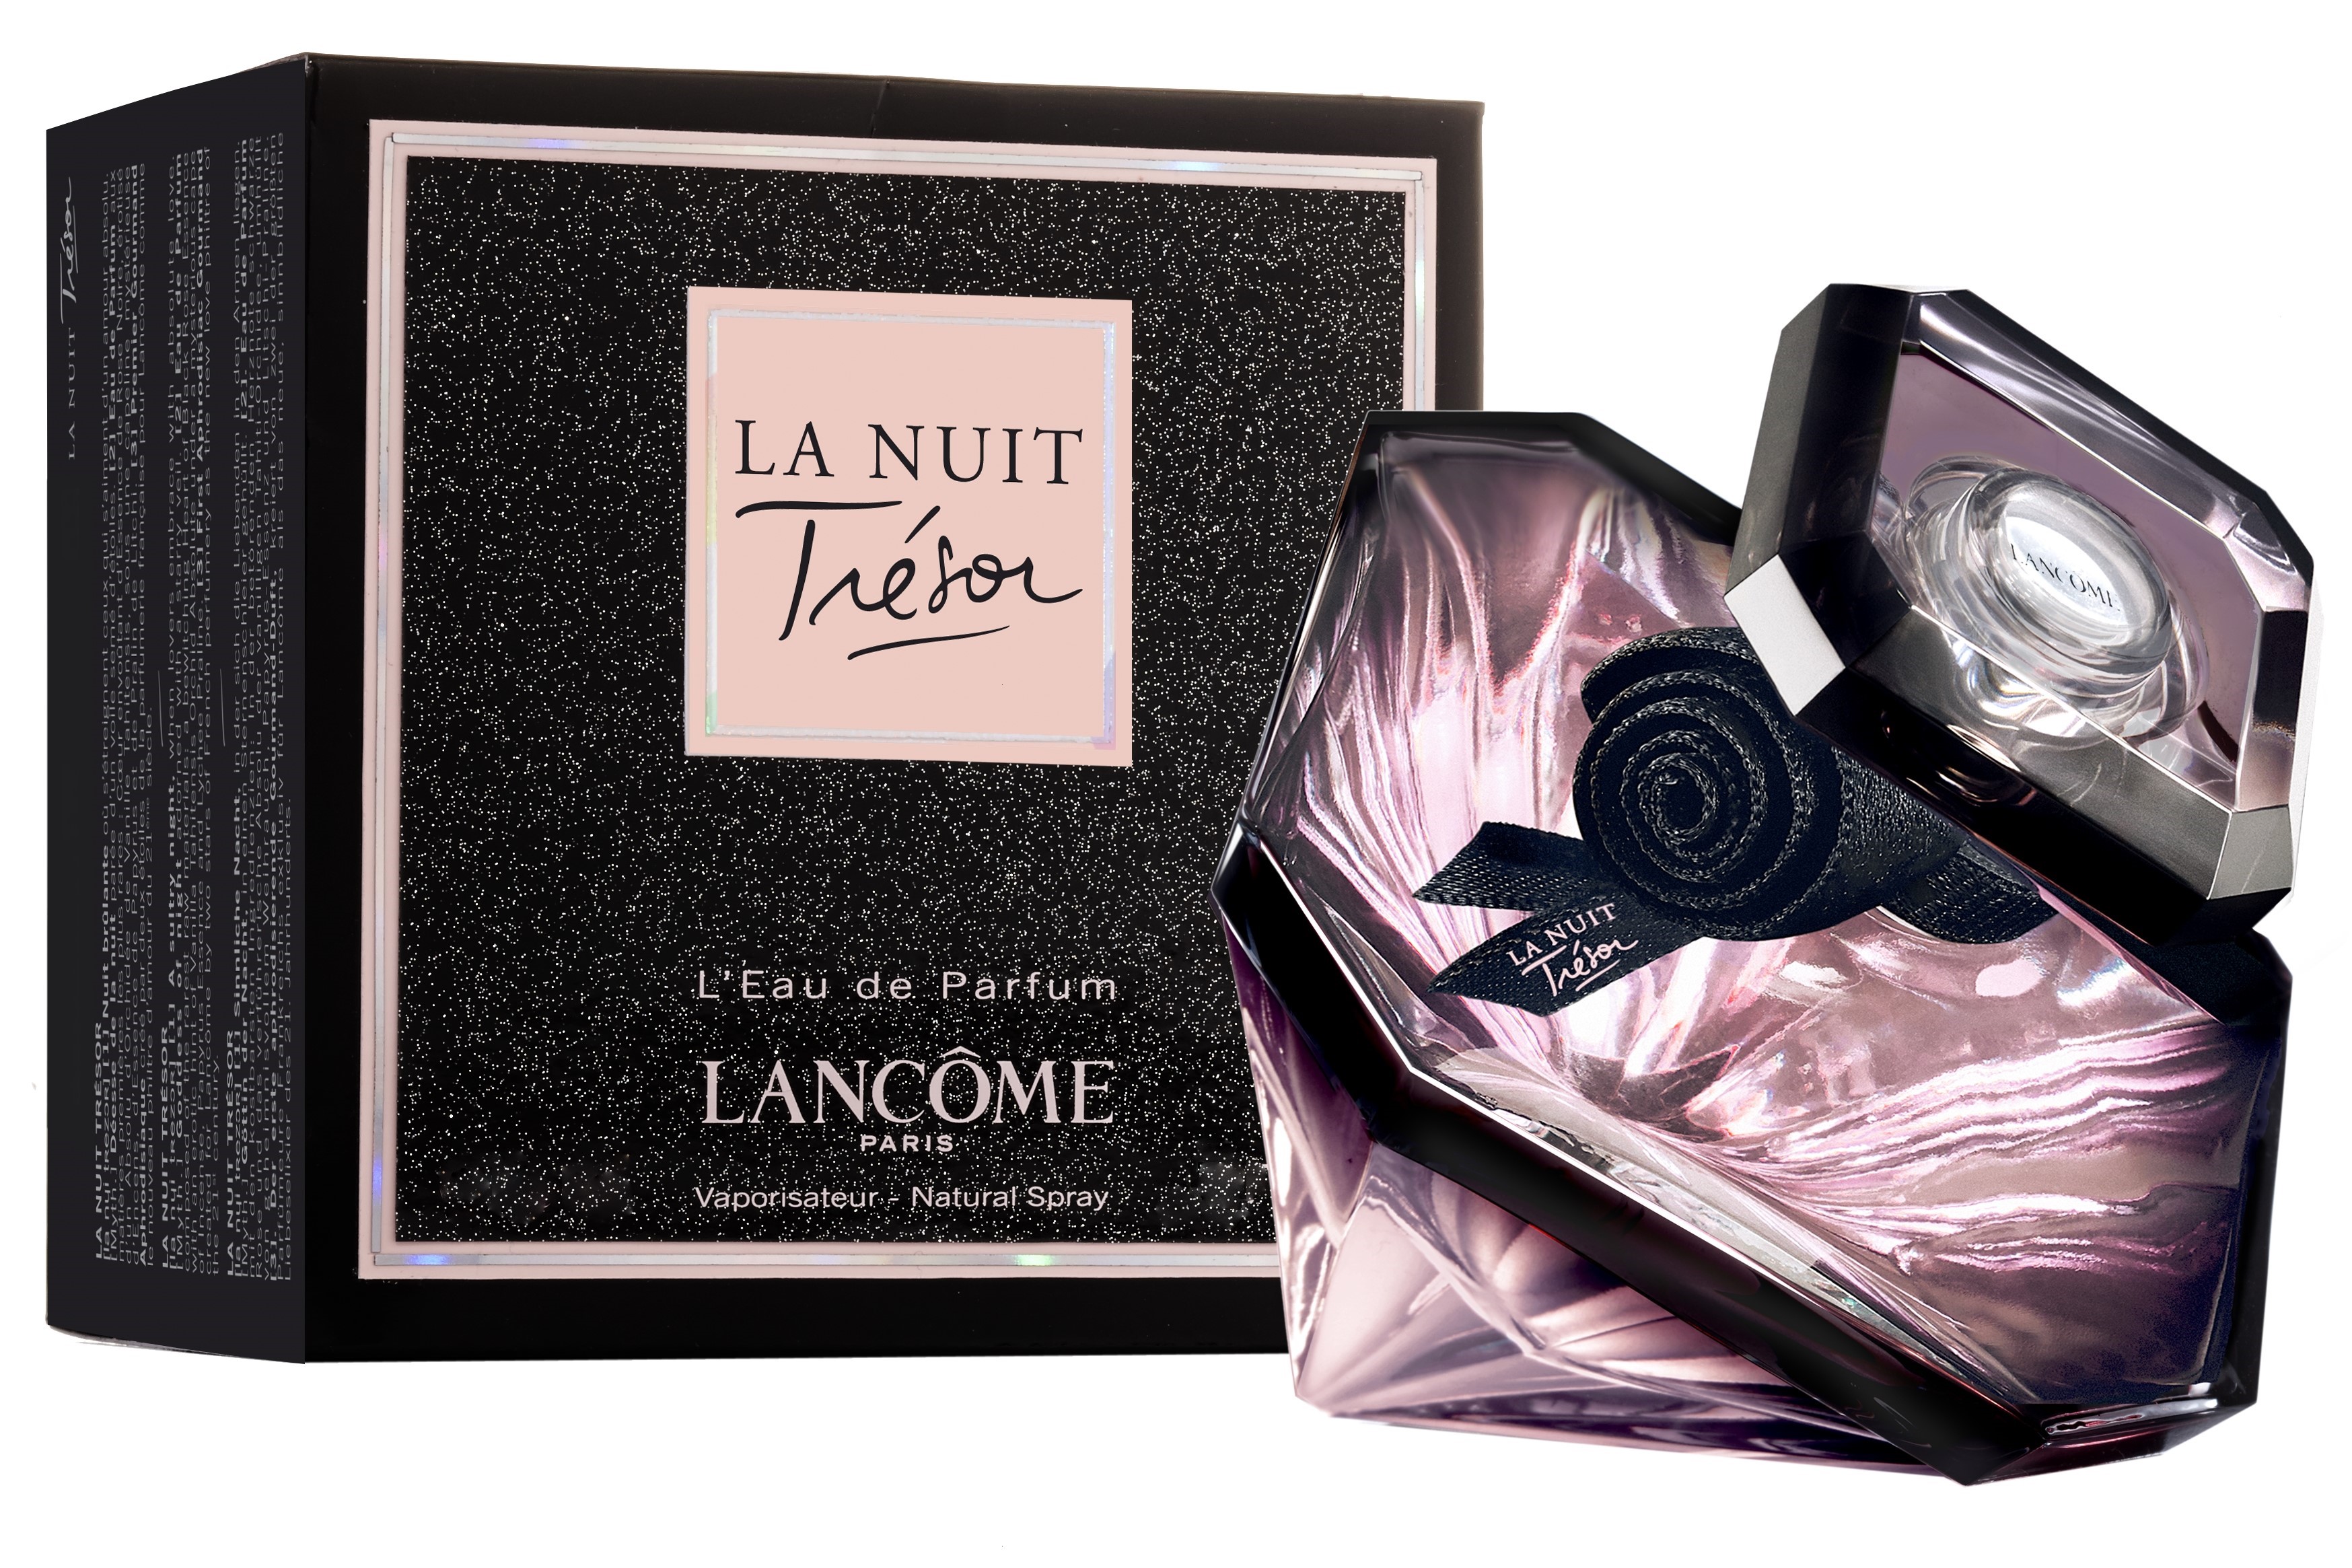 Купить Парфюмерная вода Lancome, Lancome Tresor La Nuit Eau De Parfum 30.0ml, Франция